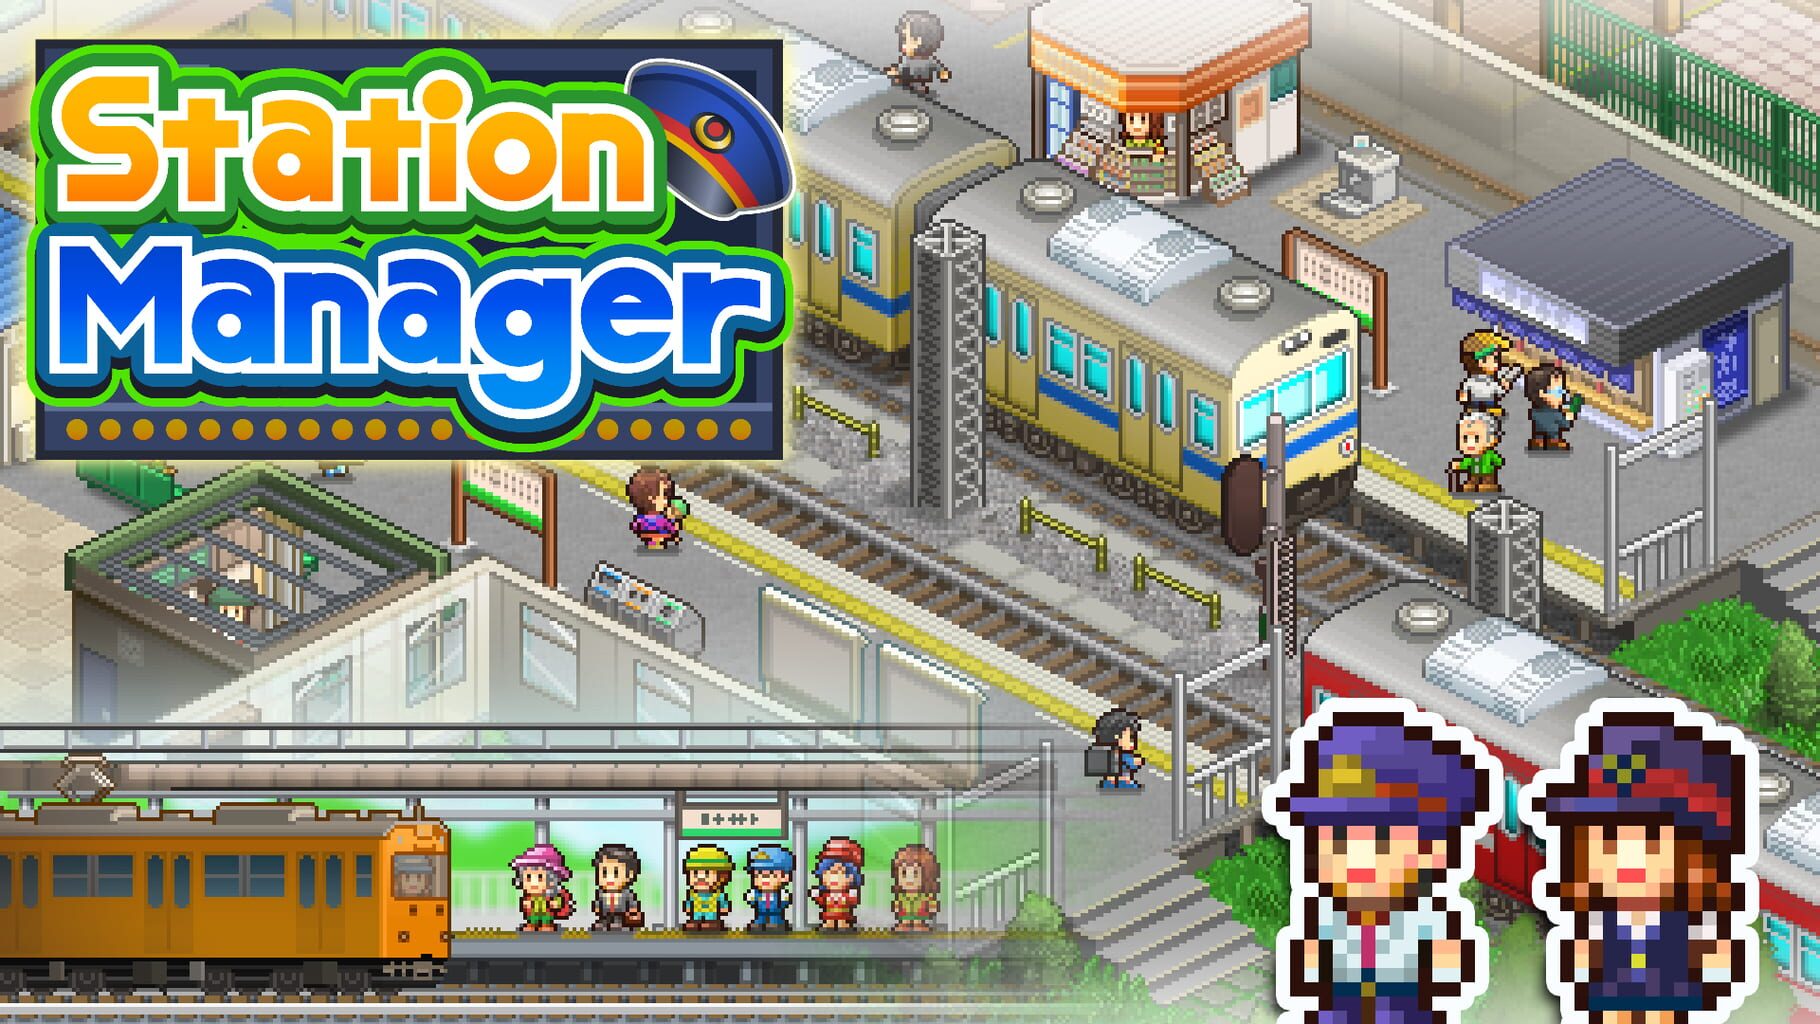 Station Manager artwork